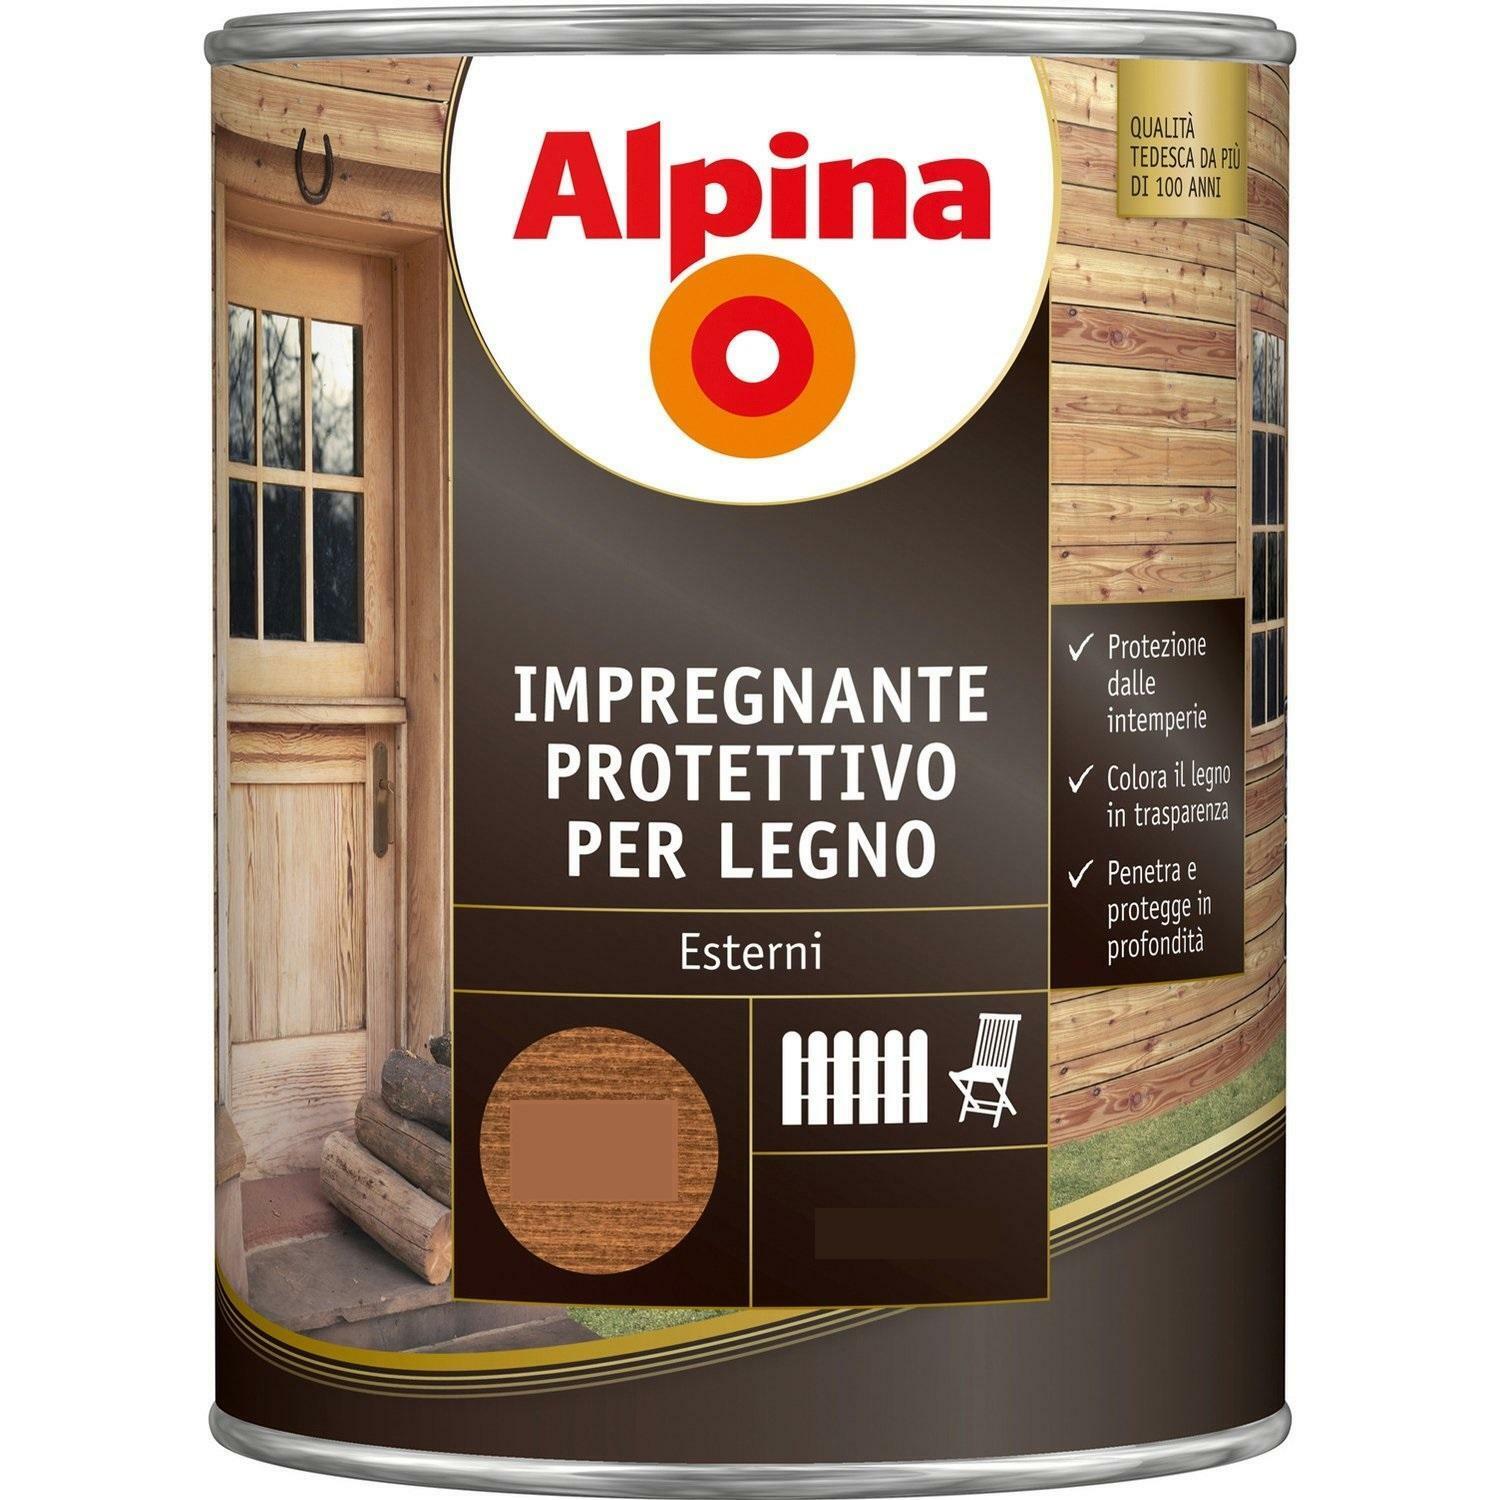 alpina alpina impregnanti protettivo per legno colore larice 2,5 litri